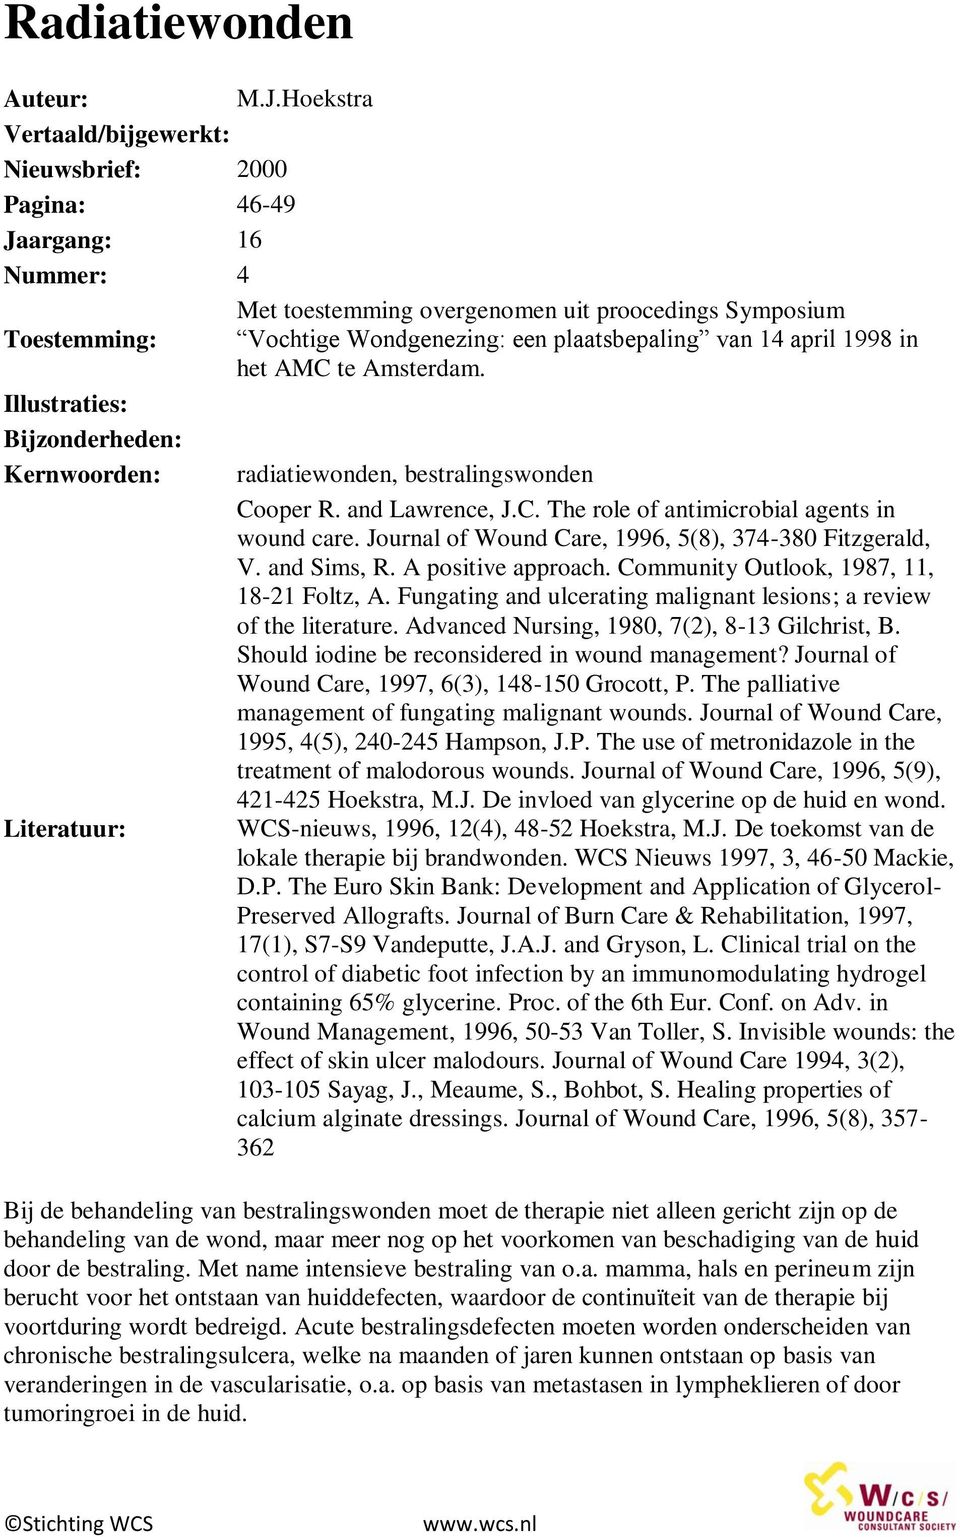 14 april 1998 in het AMC te Amsterdam. Illustraties: Bijzonderheden: Kernwoorden: radiatiewonden, bestralingswonden Cooper R. and Lawrence, J.C. The role of antimicrobial agents in wound care.